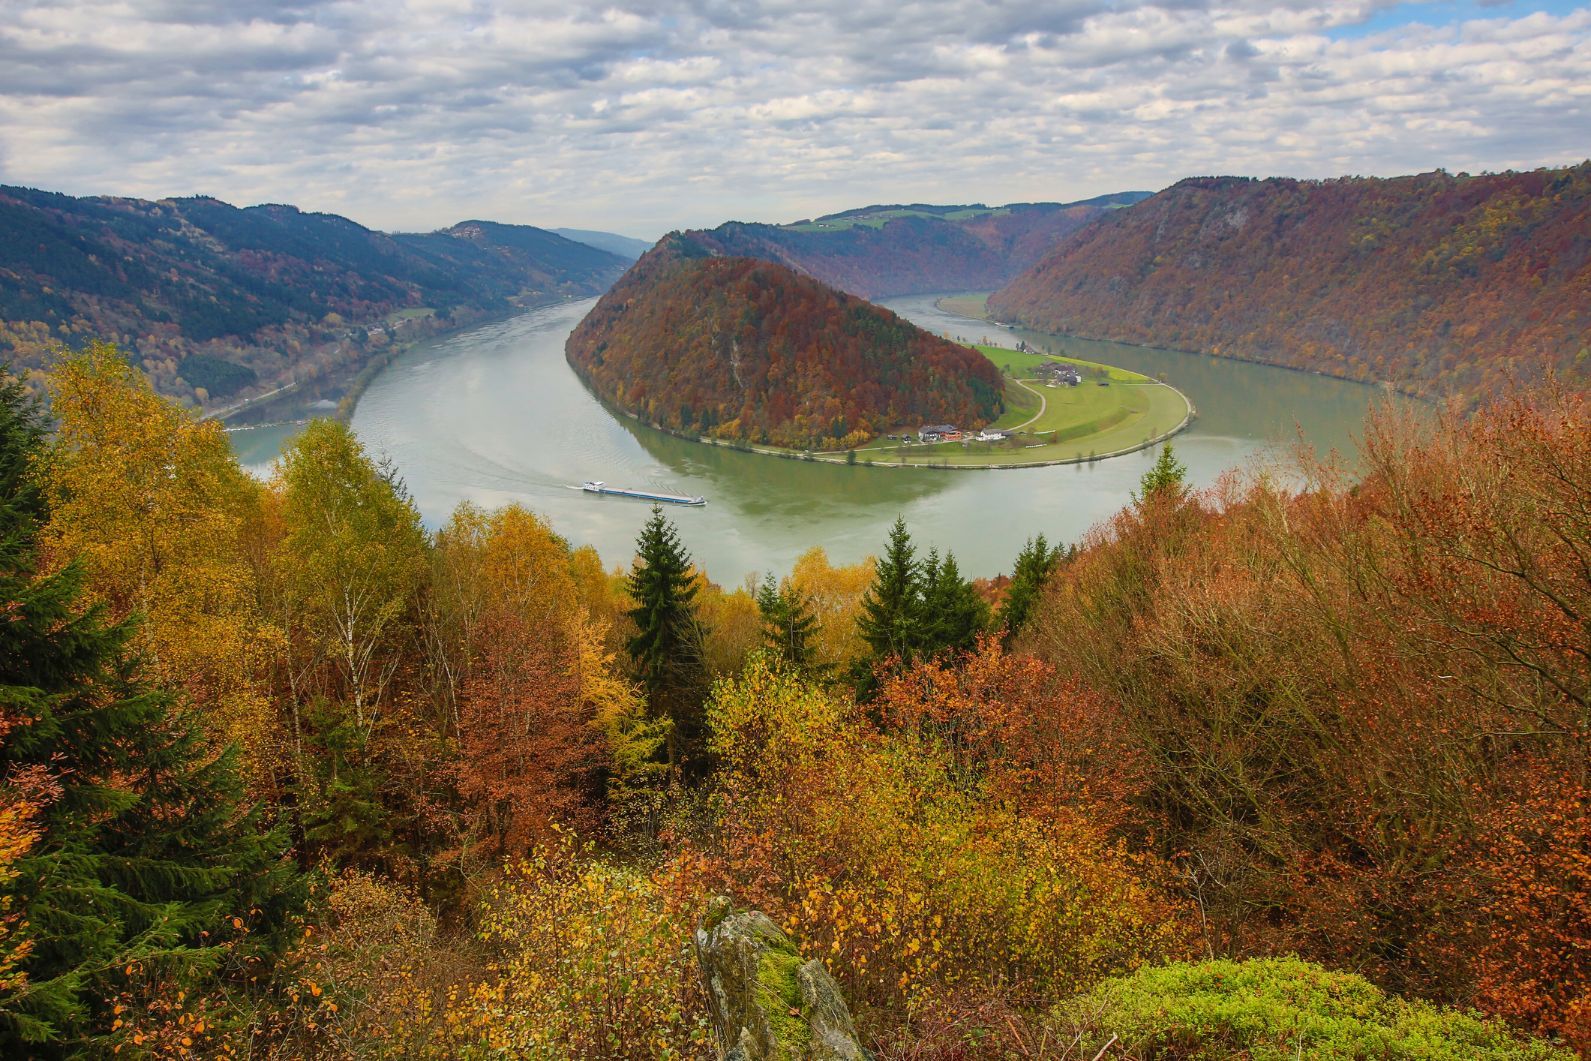 The view from Schloegener Blick to Schloegener Schlinge, a part of the Austrian Danube valley